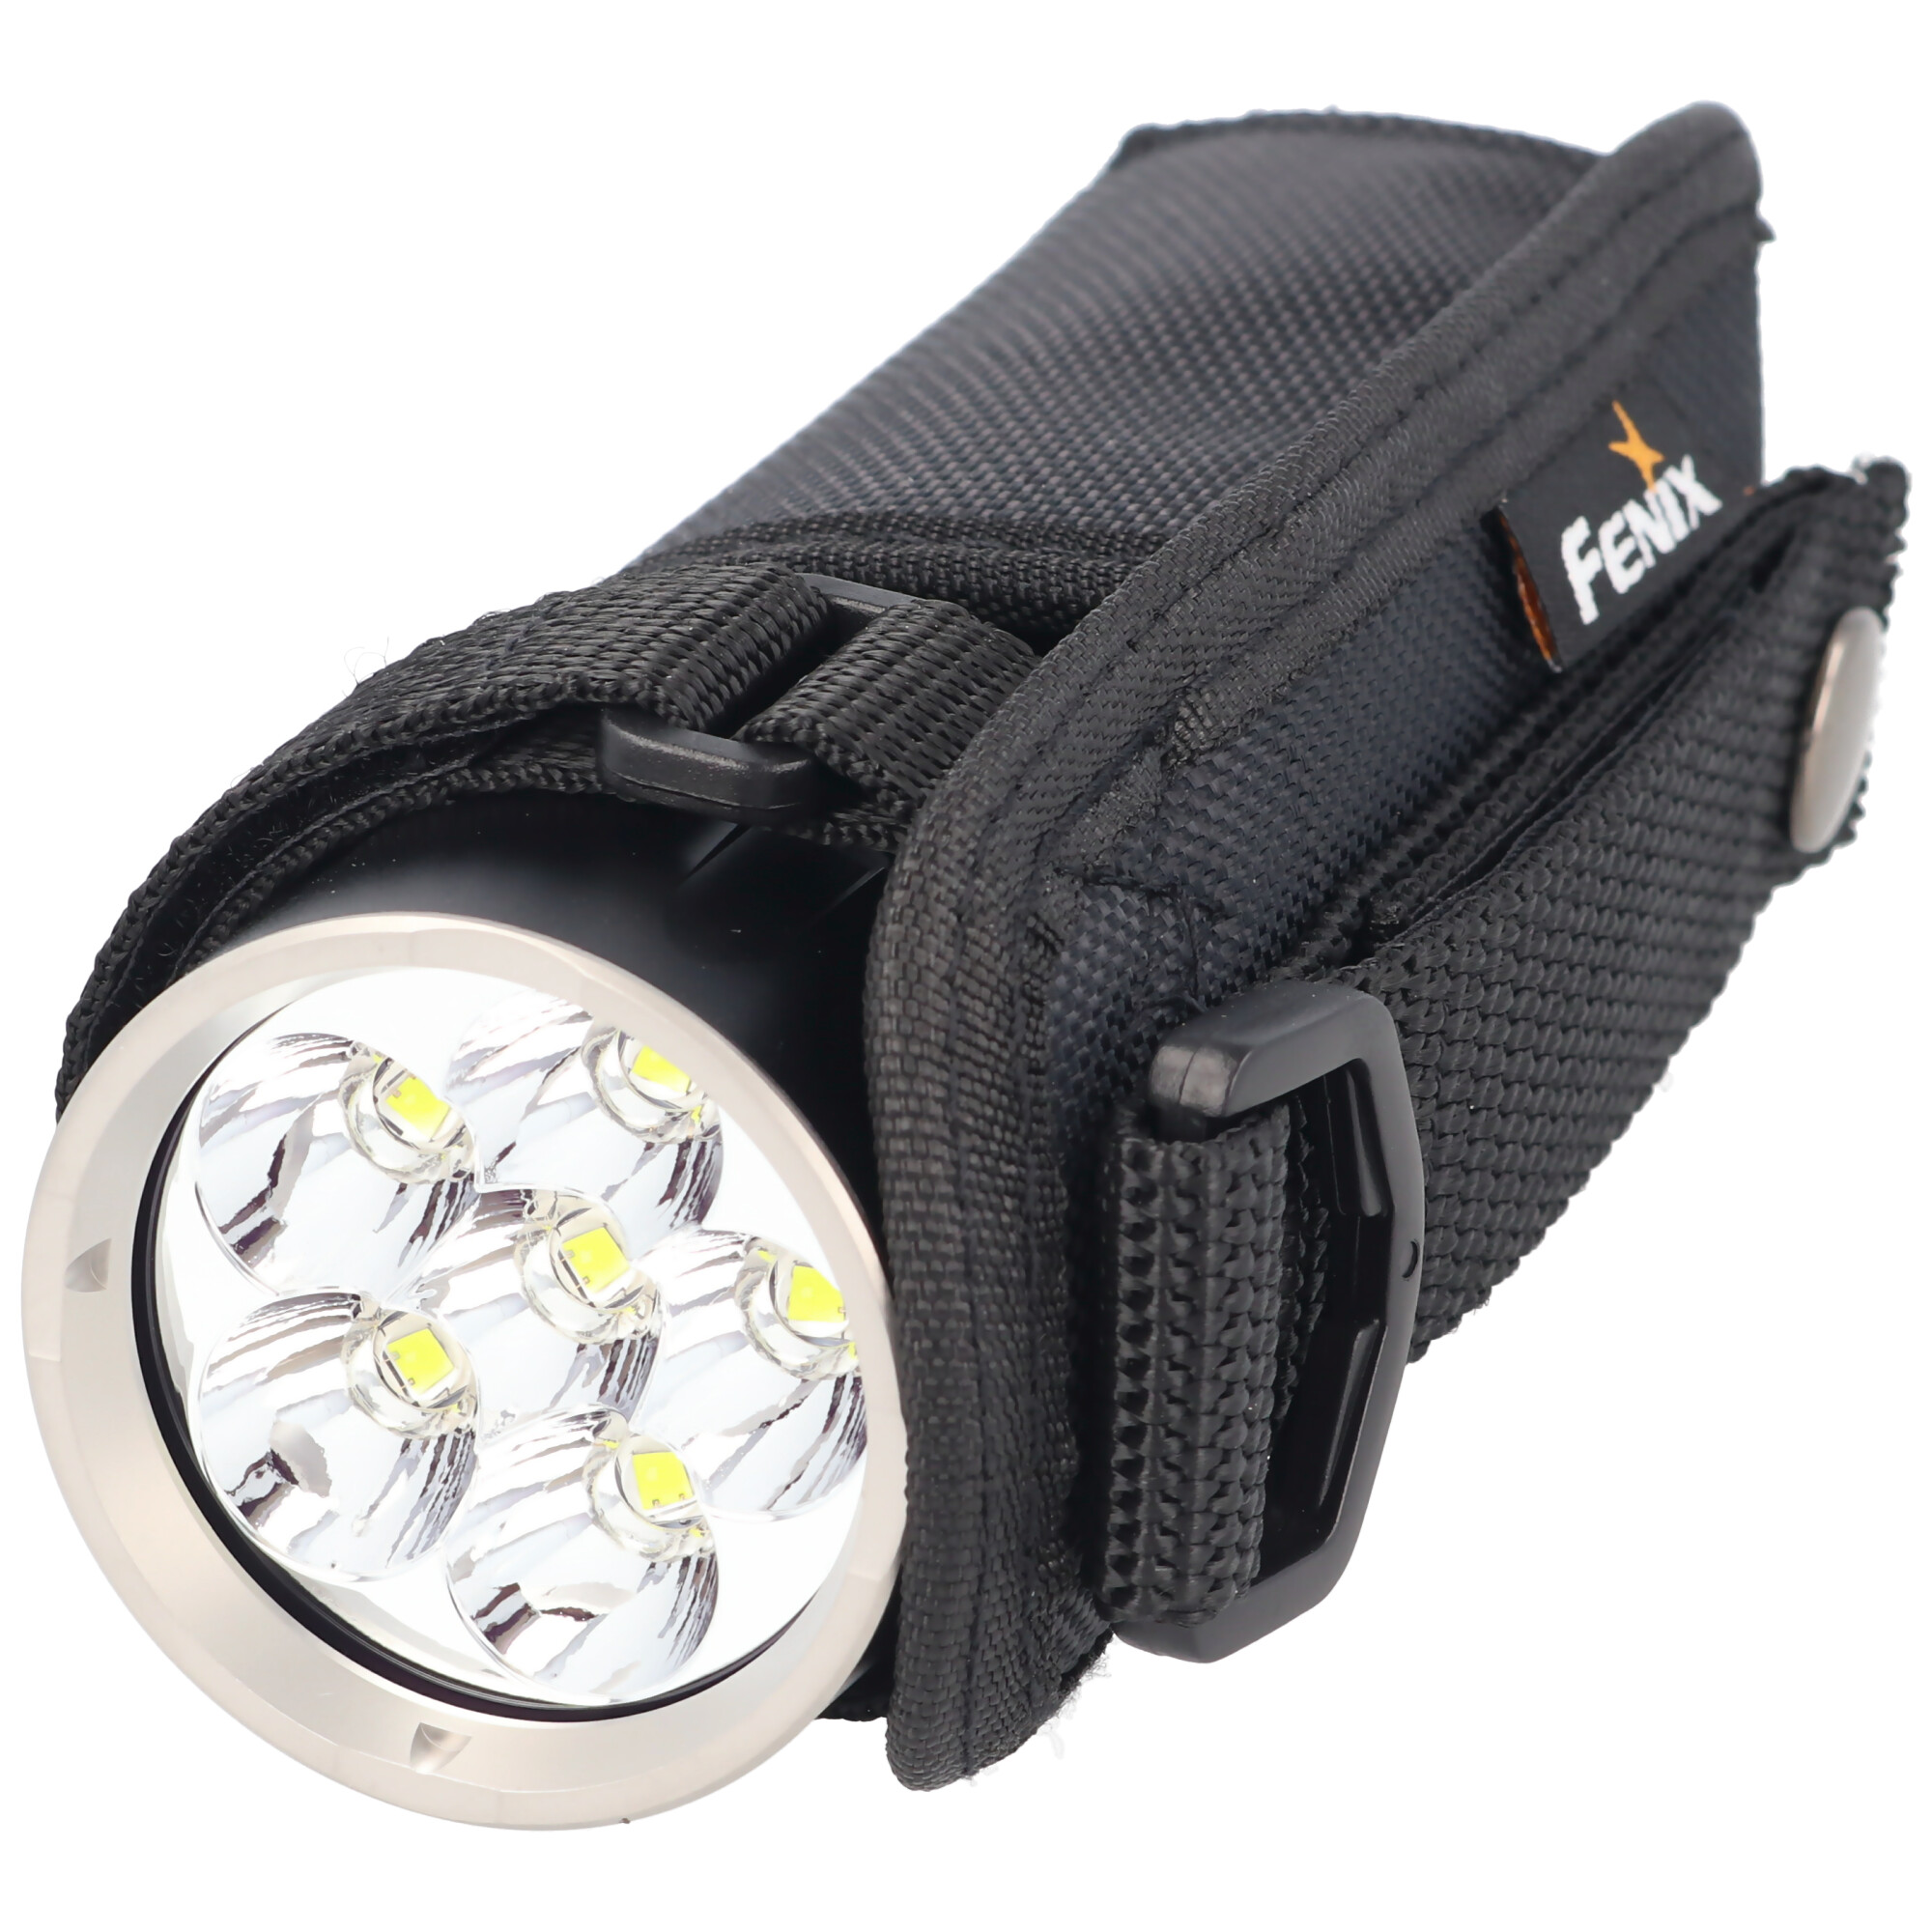 Fenix LR35R LED Taschenlampe max. 10000 Lumen Helligkeit, inklusive 2 x 21700 Li-Ion Akkus mit besonders hoher Leistung